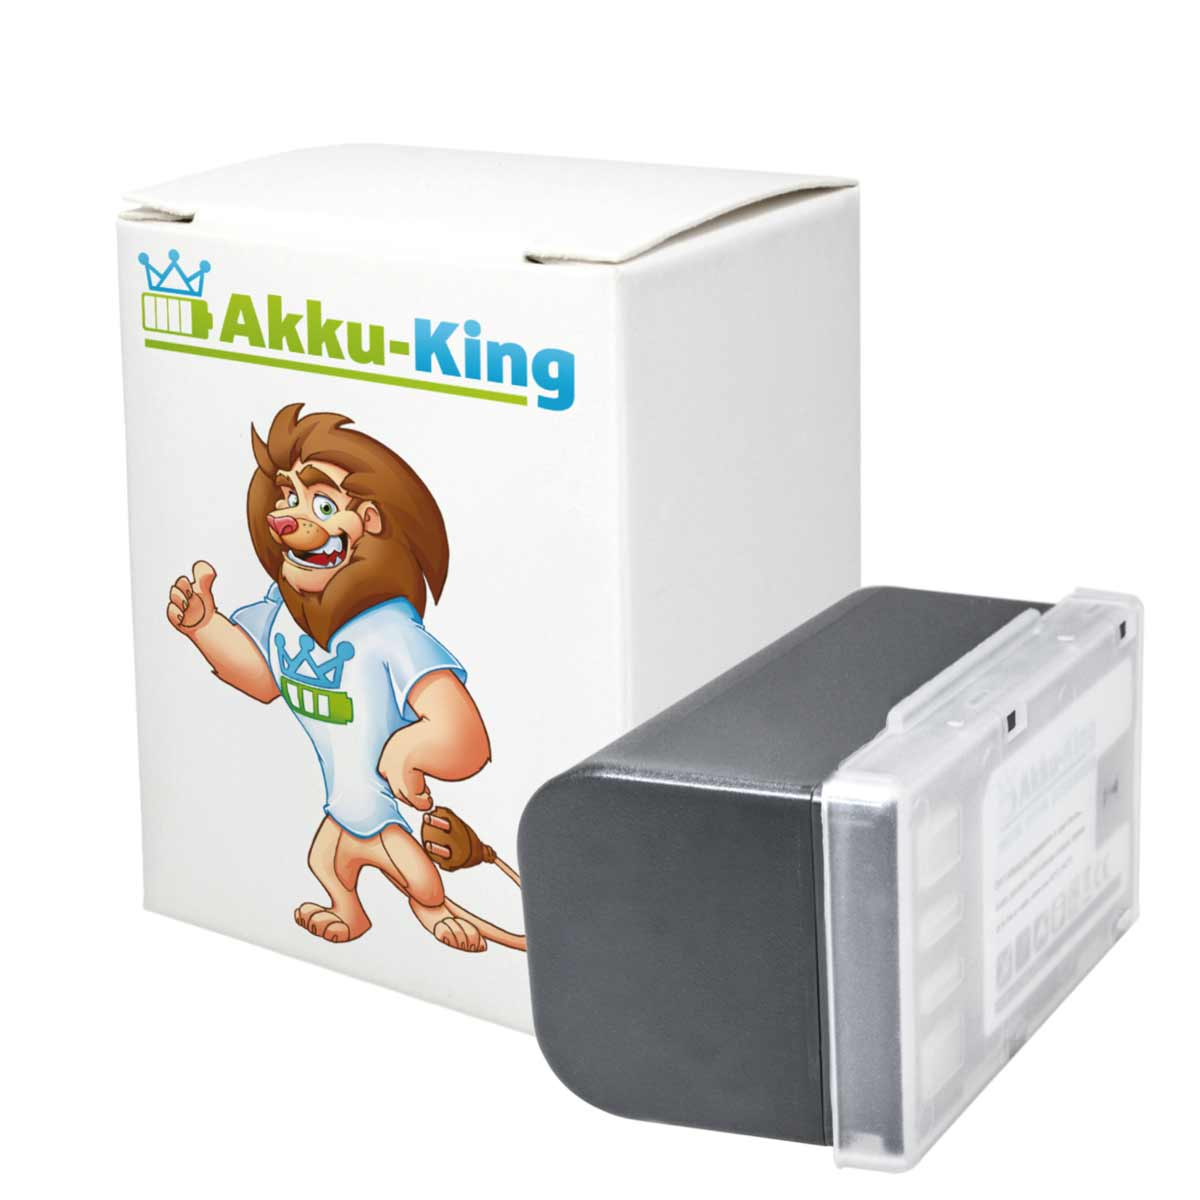 AKKU-KING Akku 1600mAh mit Li-Ion kompatibel Volt, JVC BN-VF815 7.4 Kamera-Akku